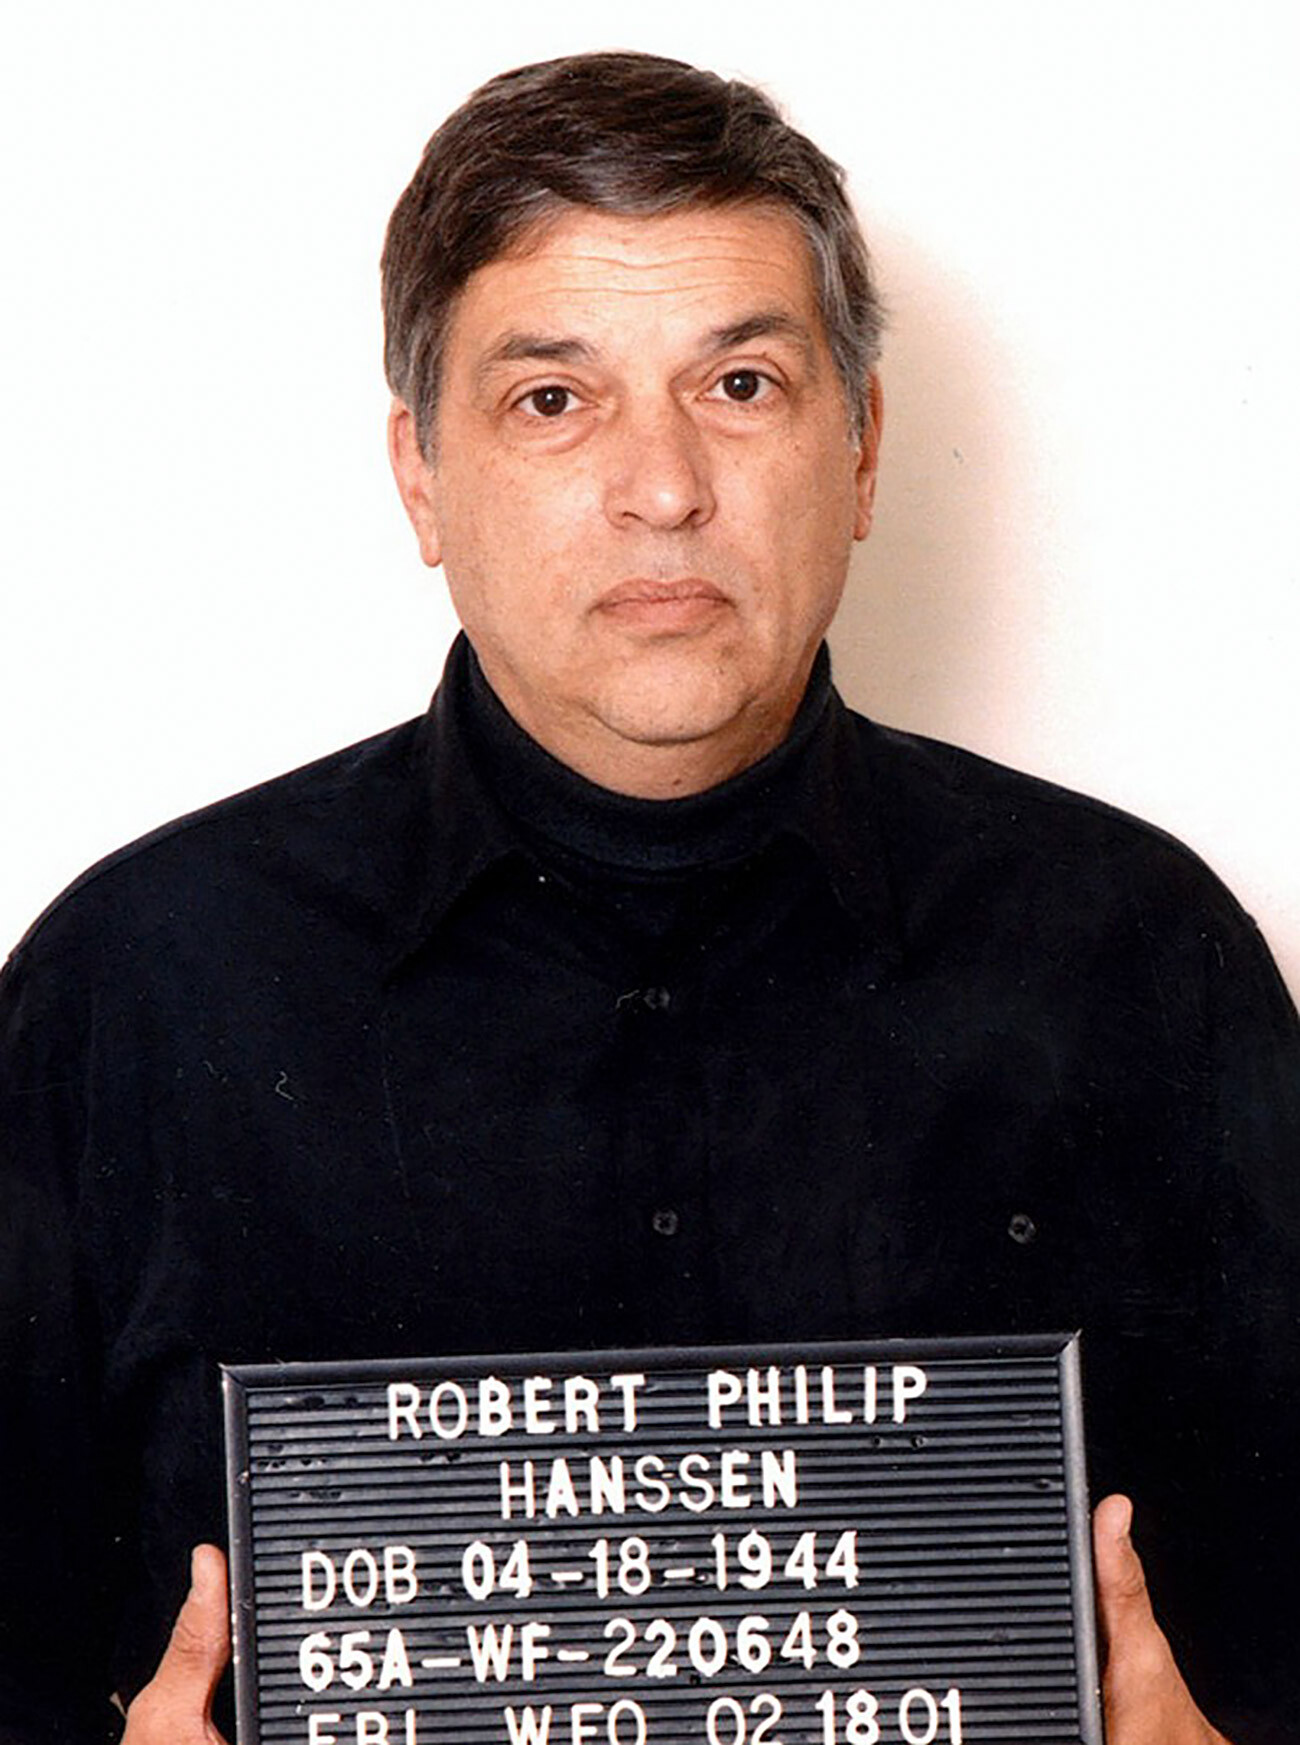 Robert Philip Hanssen; former FBI agent convicted of espionage.